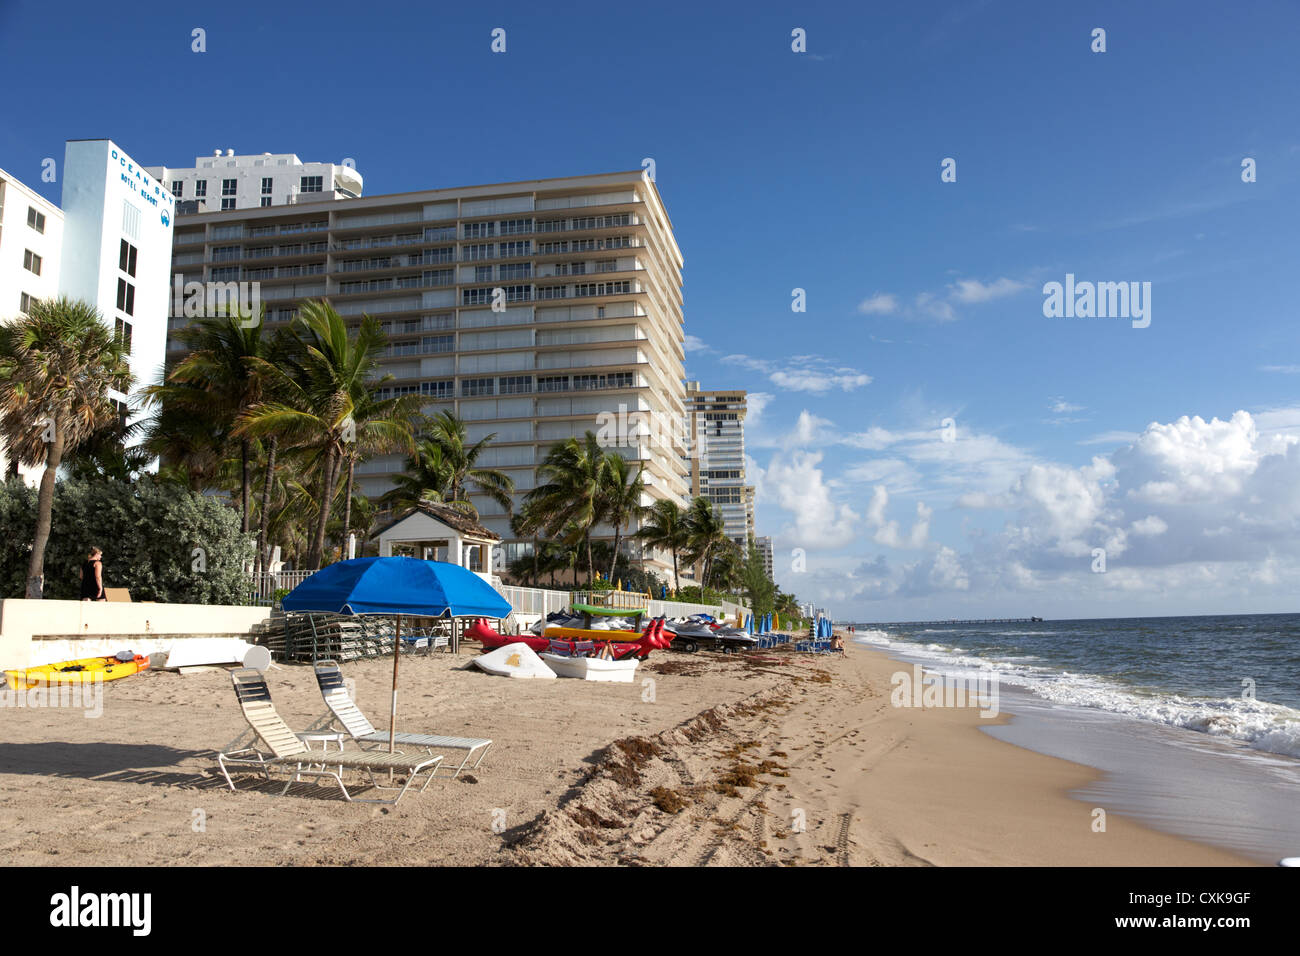 Appartements hôtels et les développements en bord de la plage de Fort Lauderdale florida usa Banque D'Images